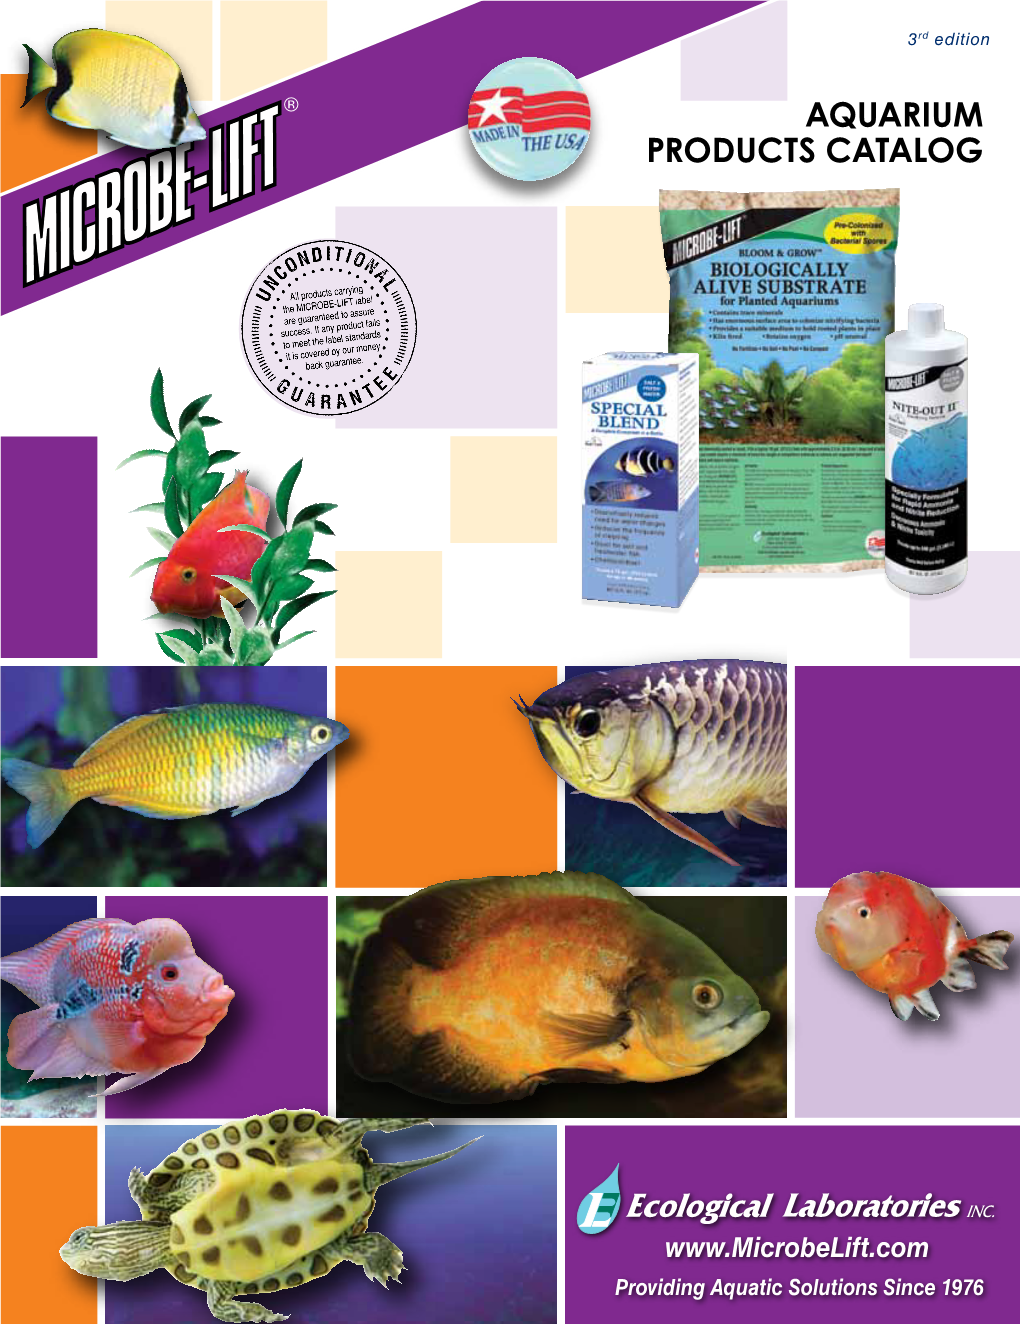 Aquarium Products Catalog